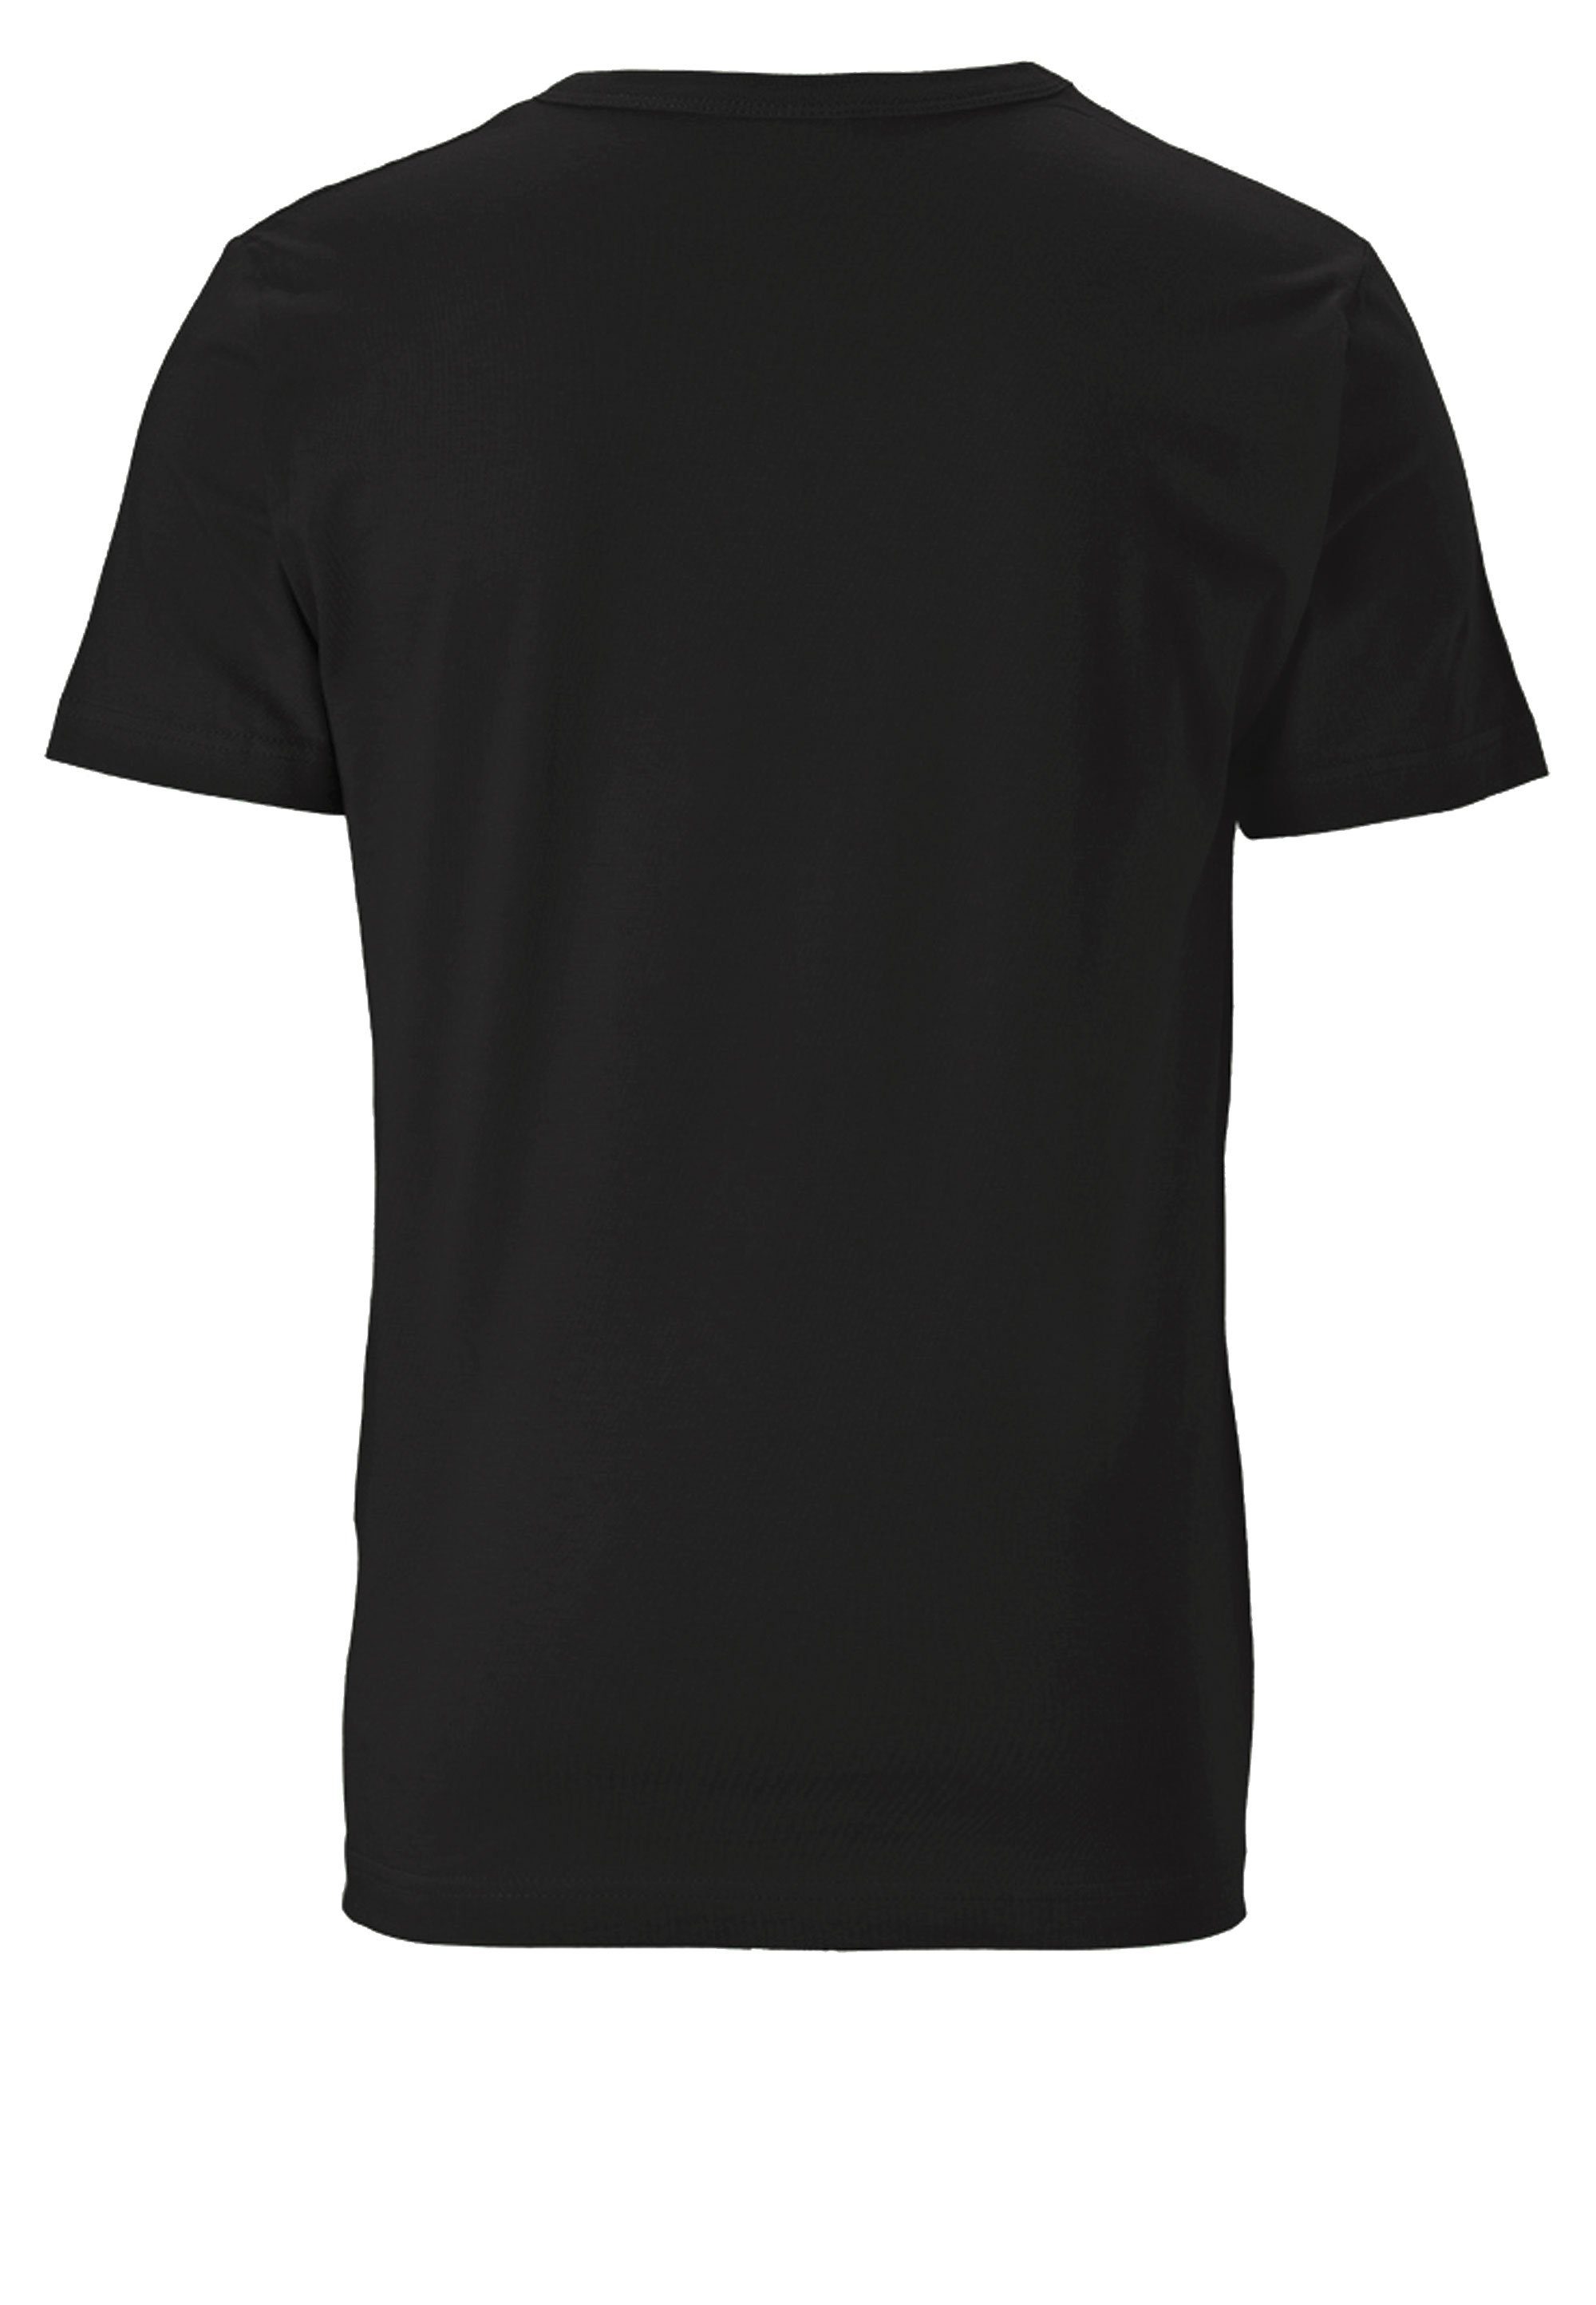 LOGOSHIRT T-Shirt Star mit Original-Print lizenziertem Wars